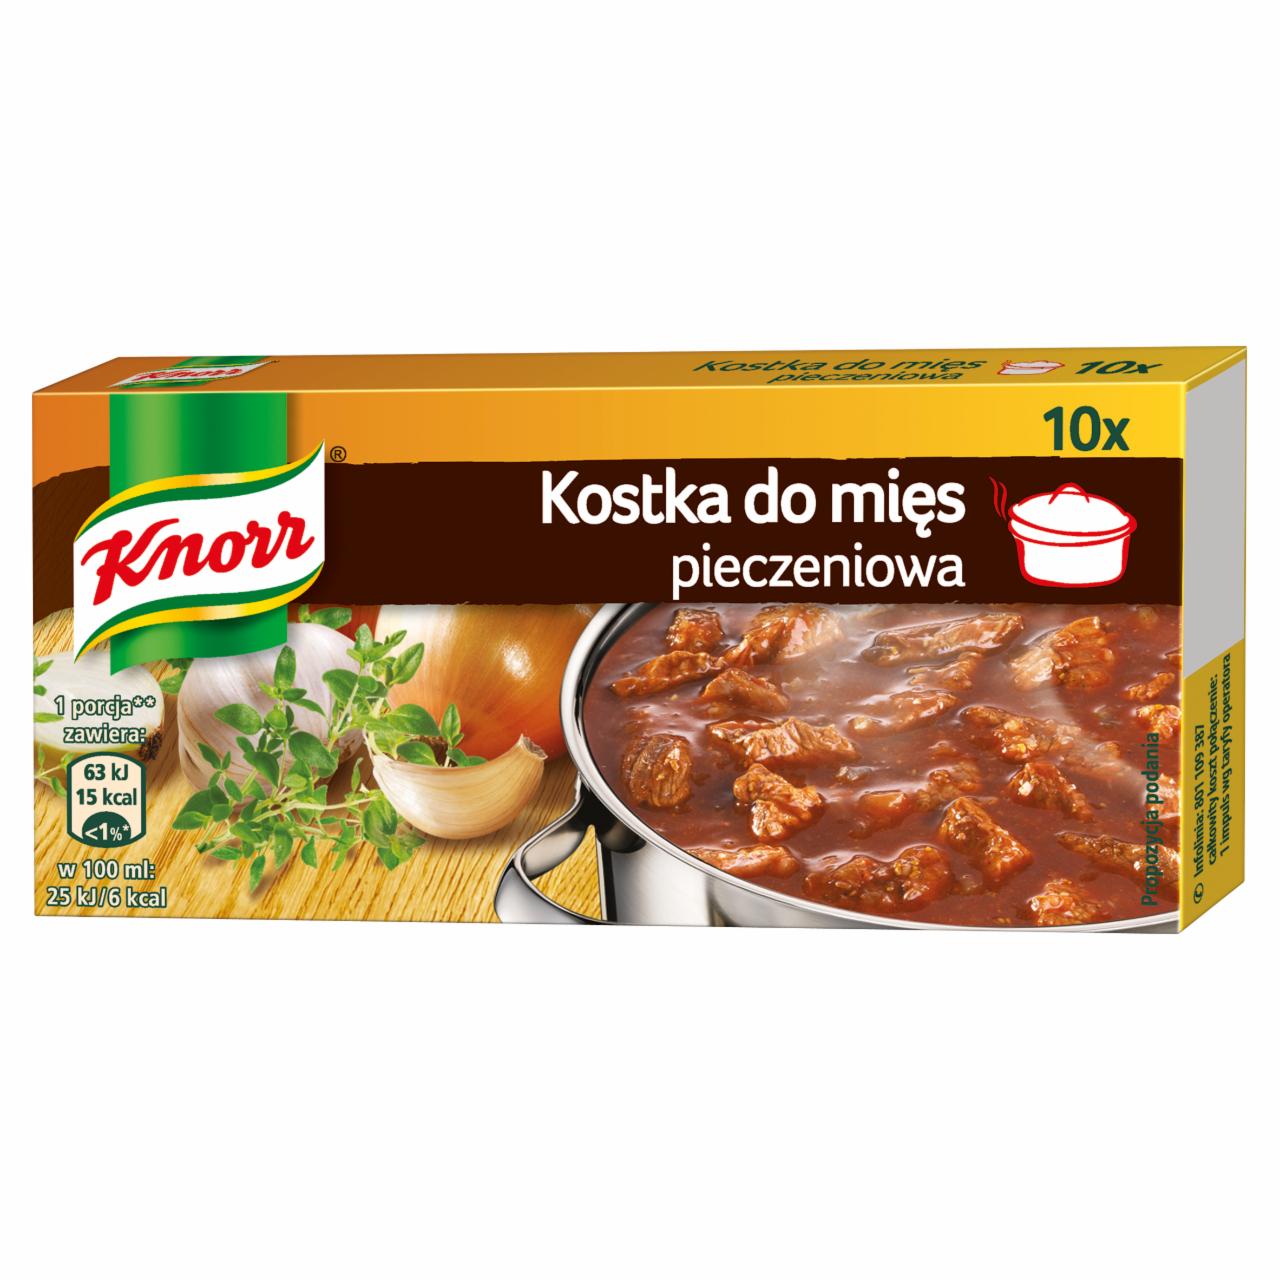 Zdjęcia - Knorr Kostka do mięs pieczeniowa 100 g (10 kostek)